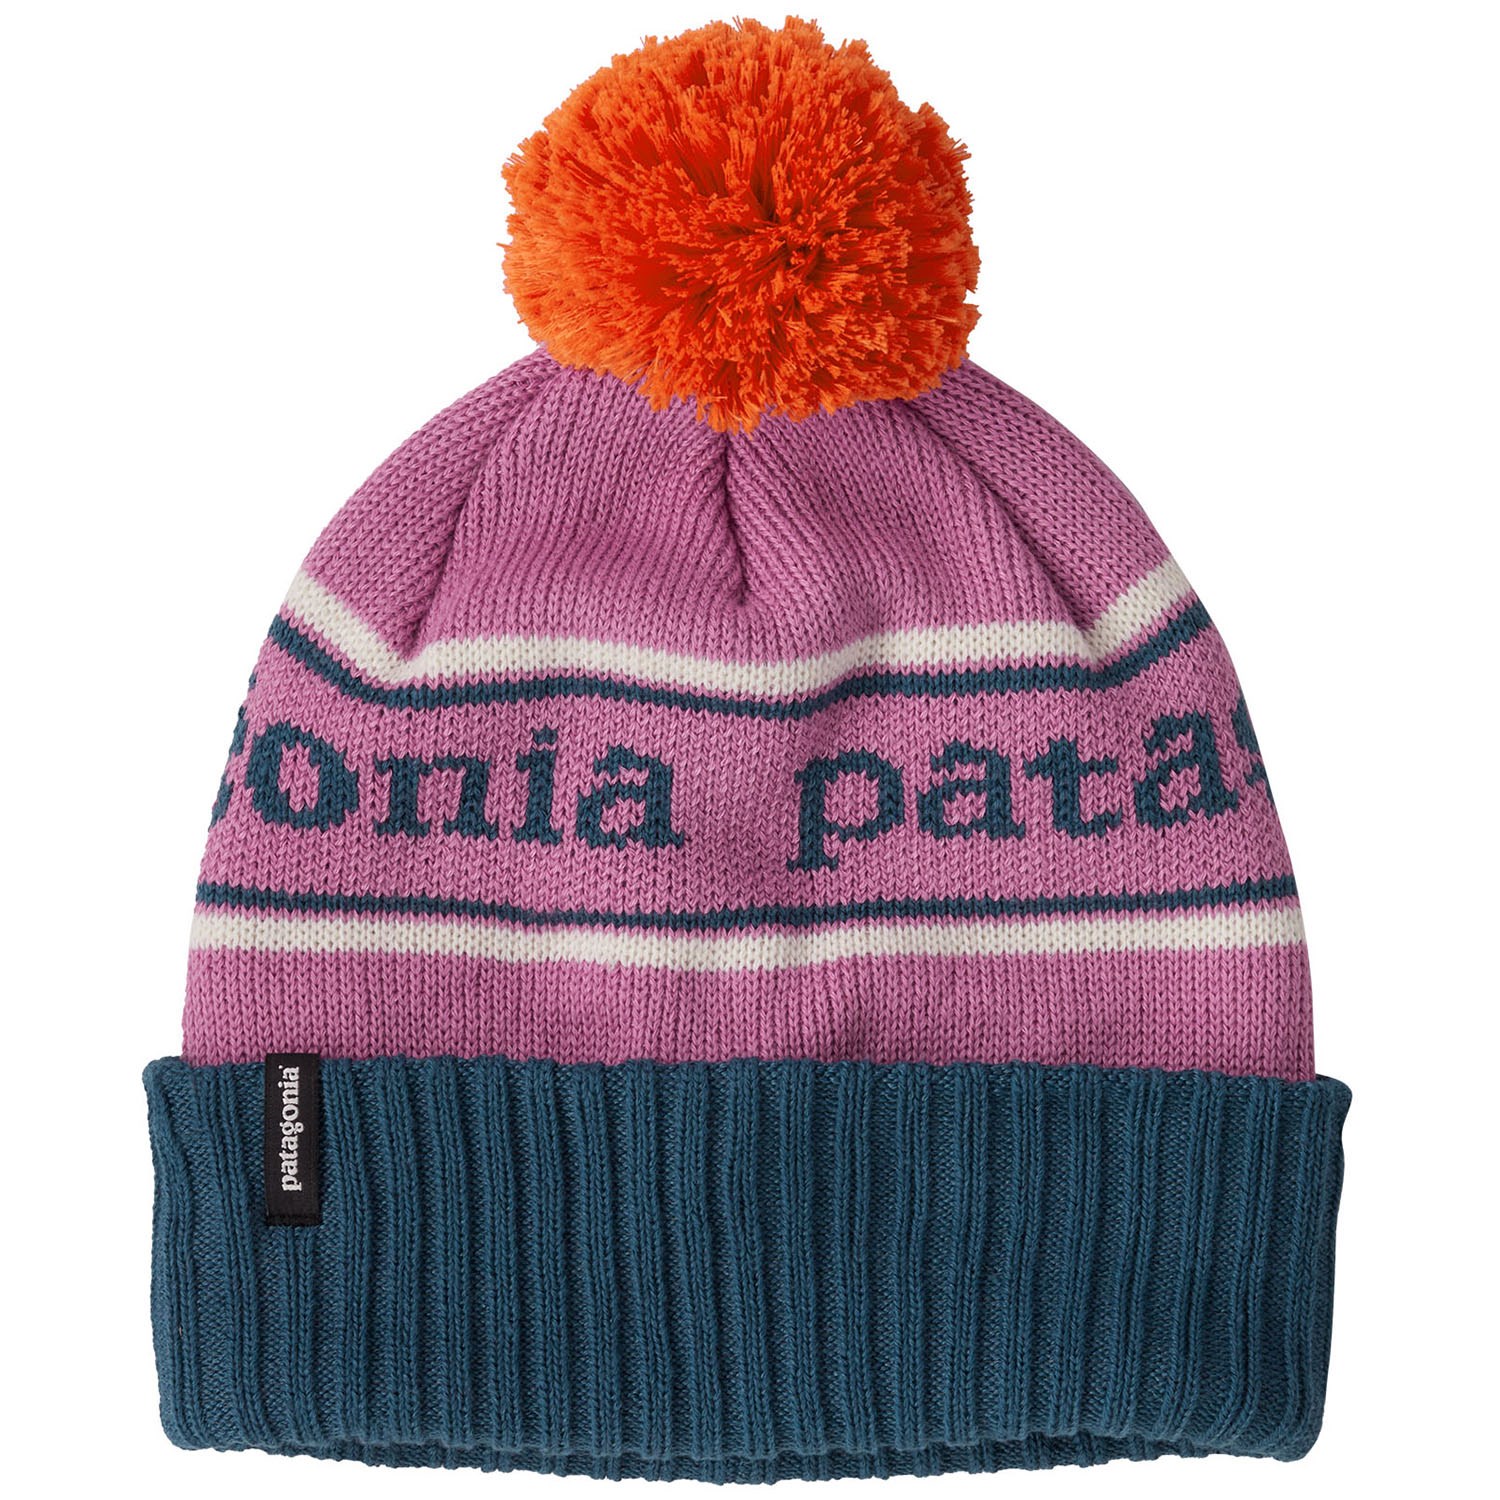 Шапка детская Patagonia Powder Town, розовый шапка бини powder town с помпоном детская patagonia синий